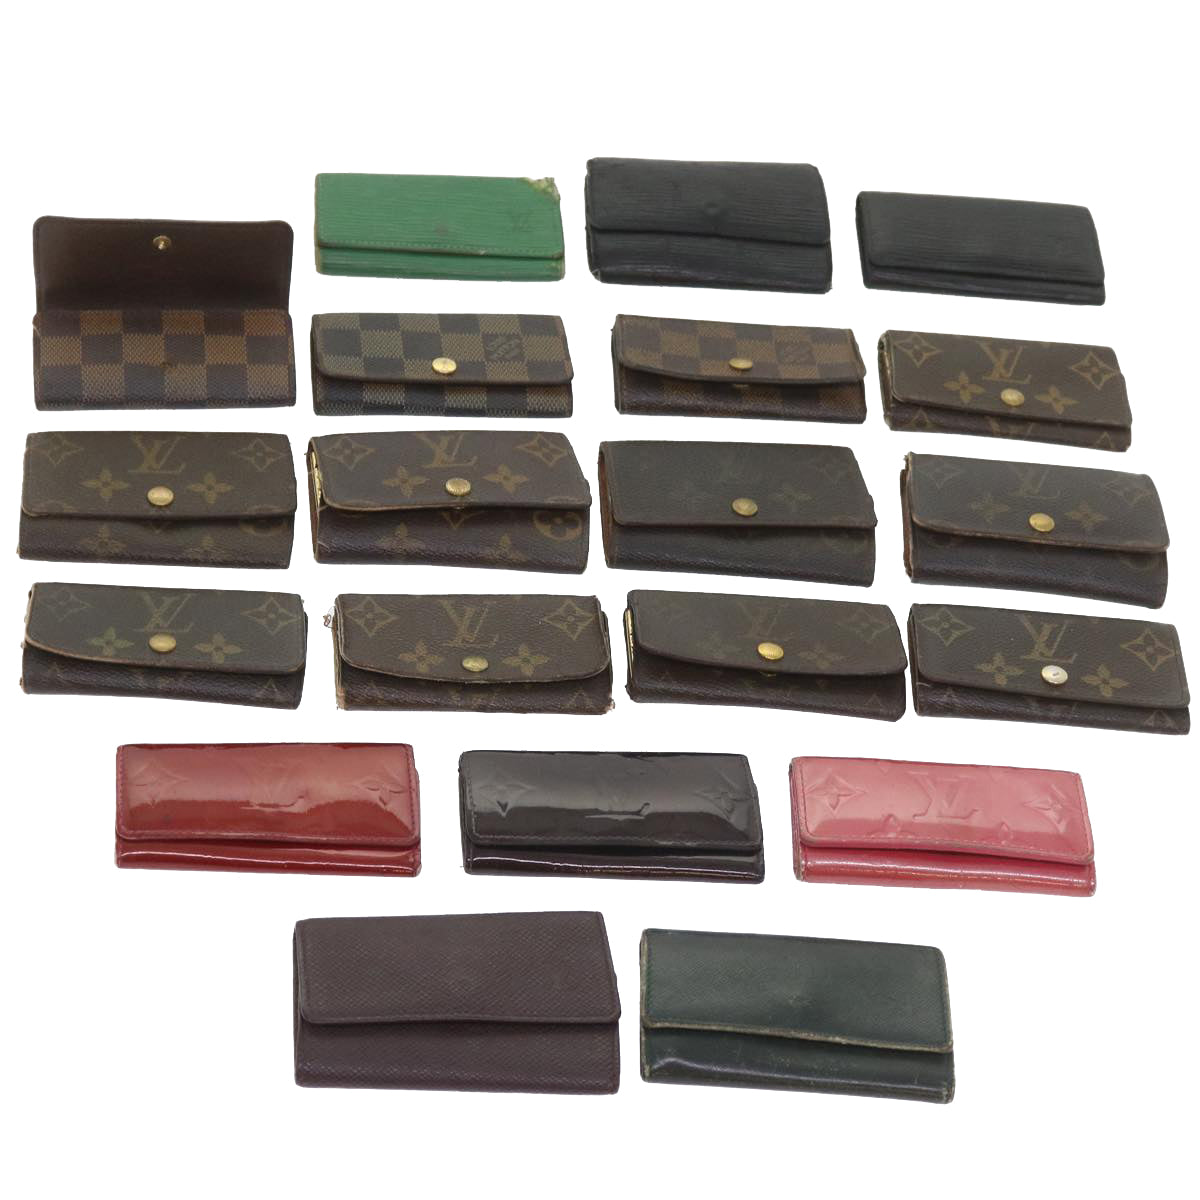 LOUIS VUITTON Monogram Vernis Epi Key Case 20 pieces set Green Black Auth 59590